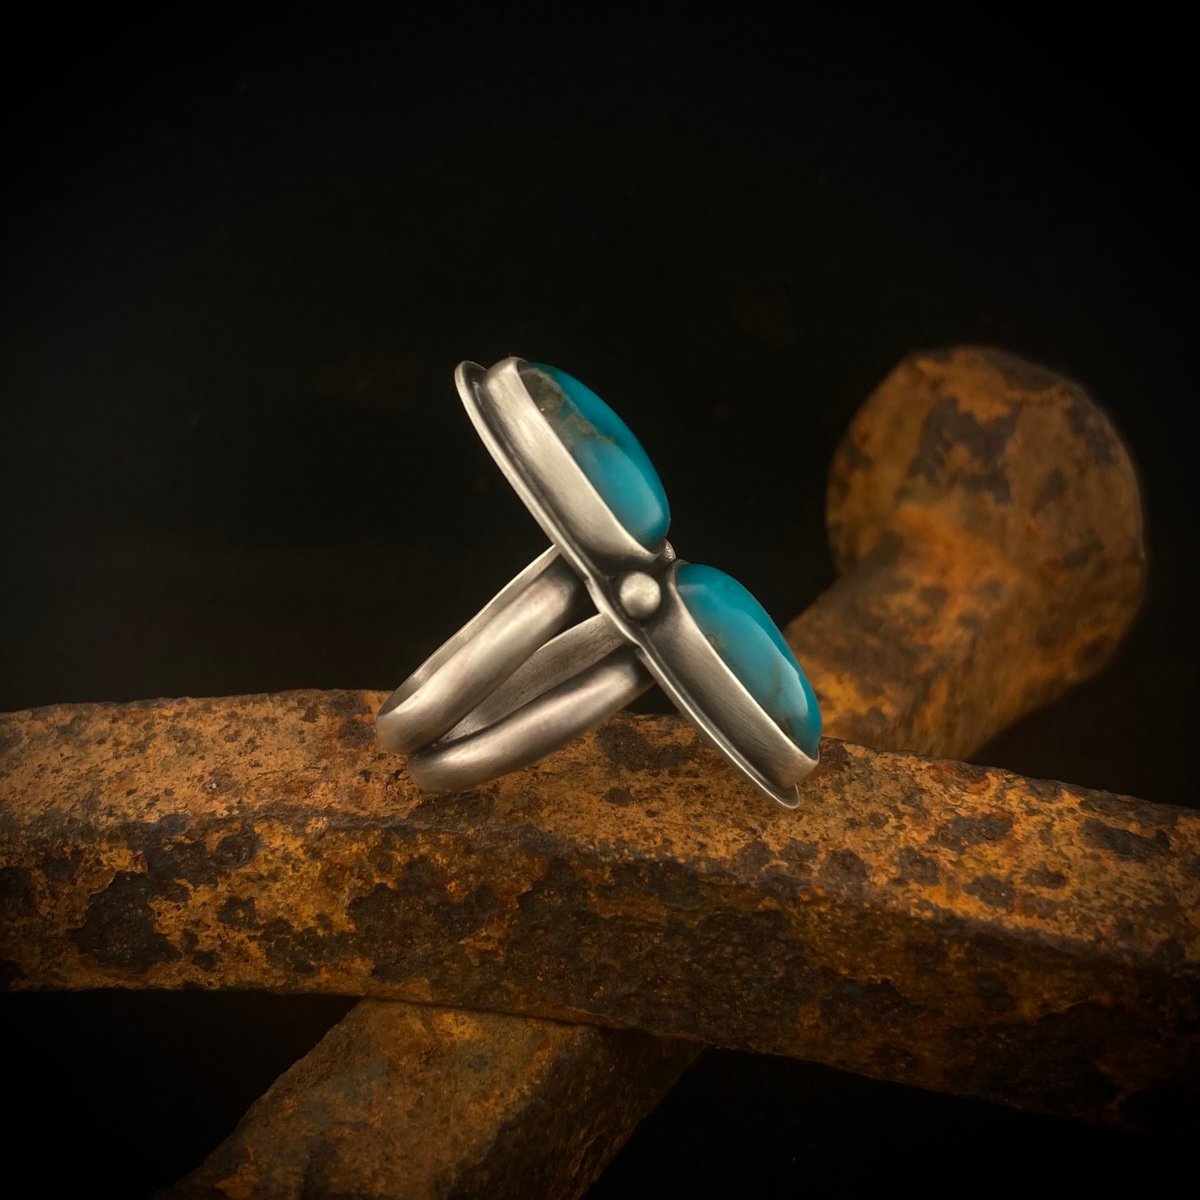 Kingman Turquoise Ring 6